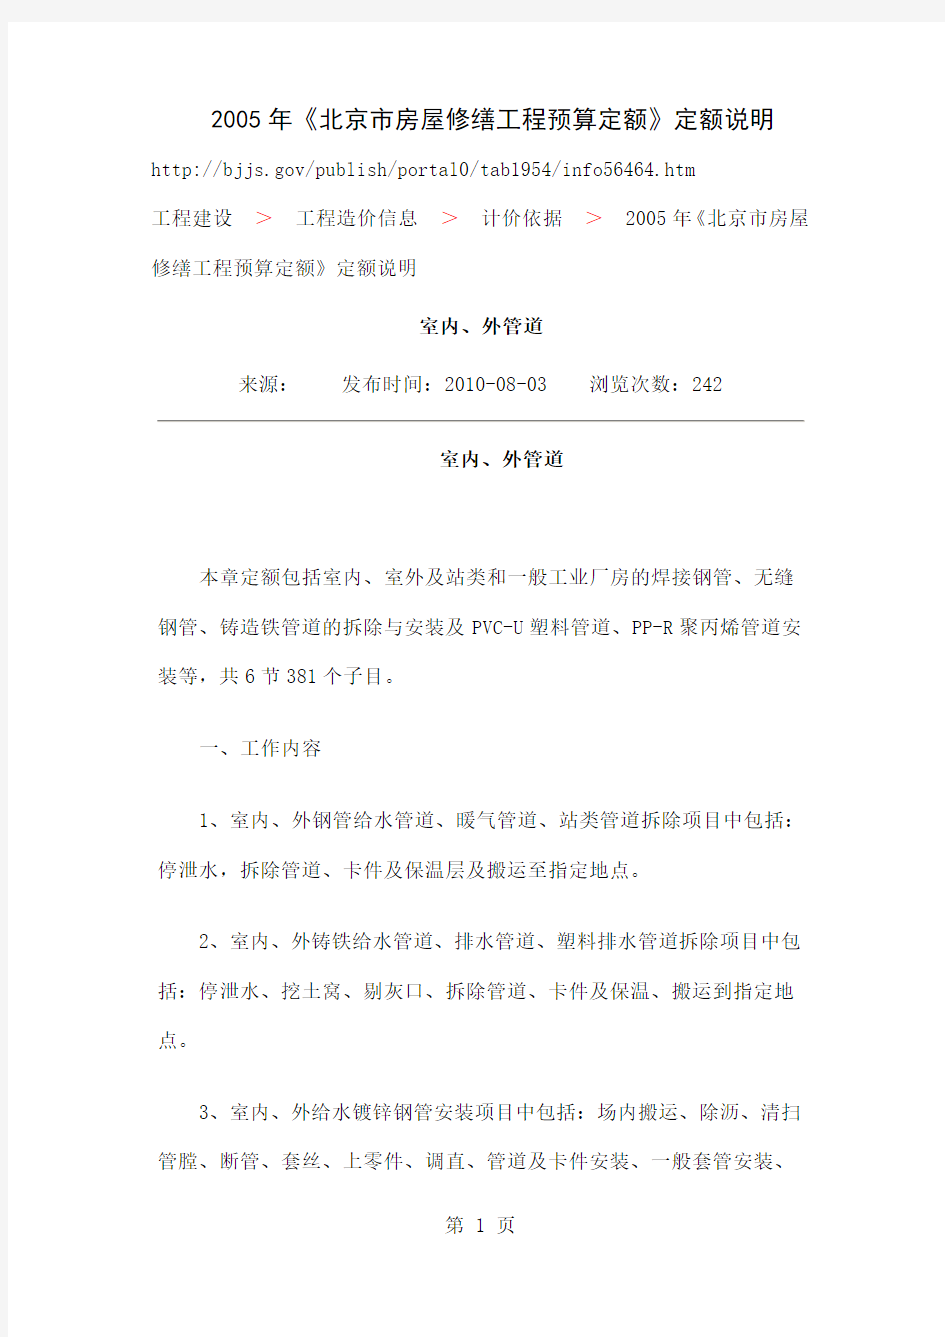 2019年《北京市房屋修缮工程预算定额》定额说明共6页文档